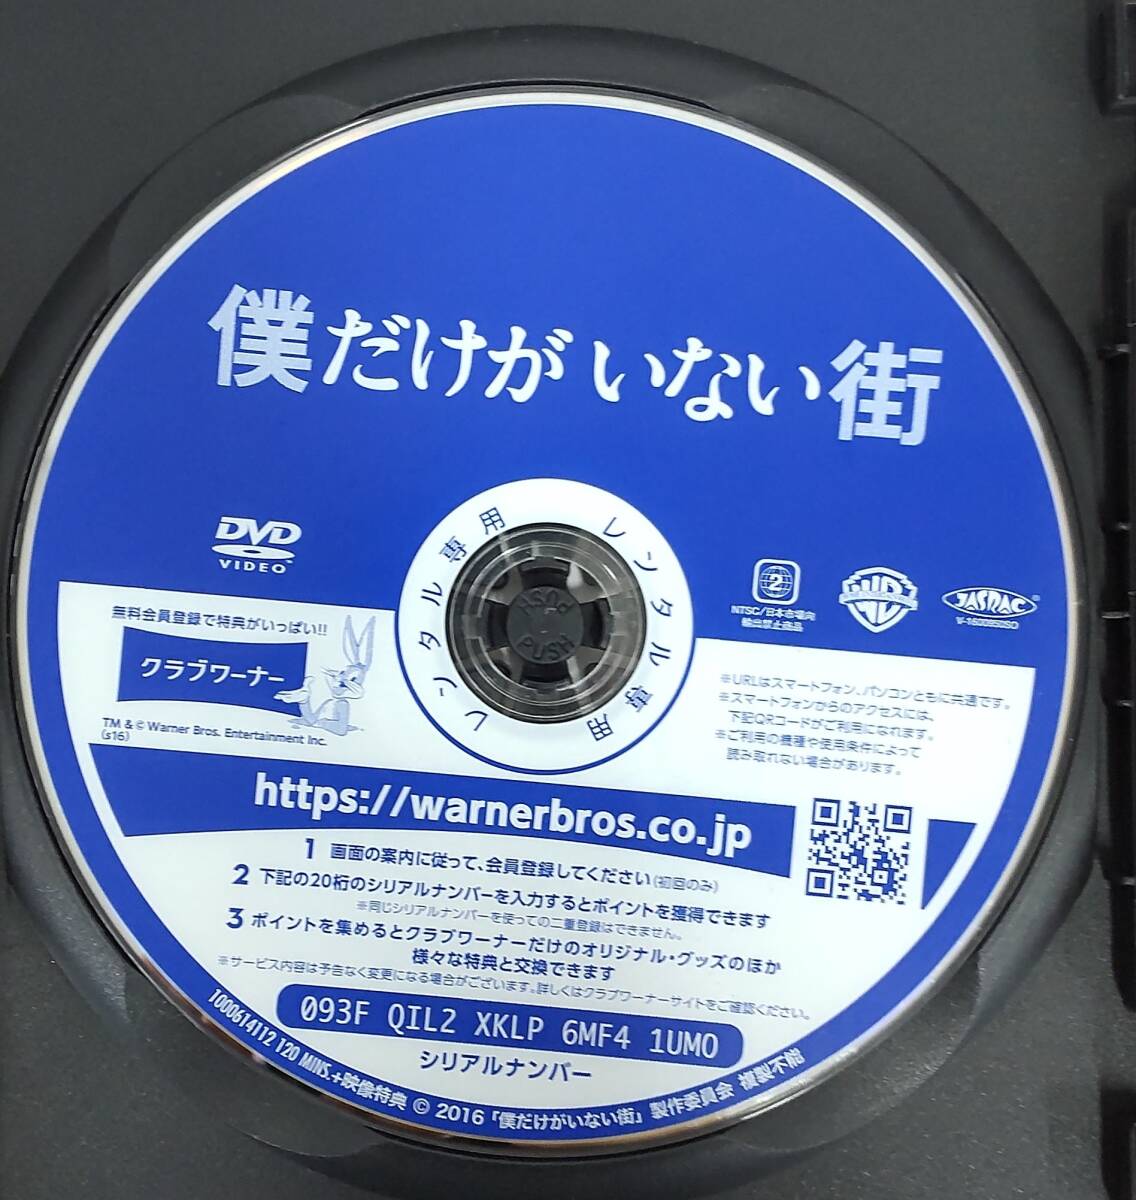 R1. только . нет улица ( японское кино )1000614112 в аренду выше б/у DVD